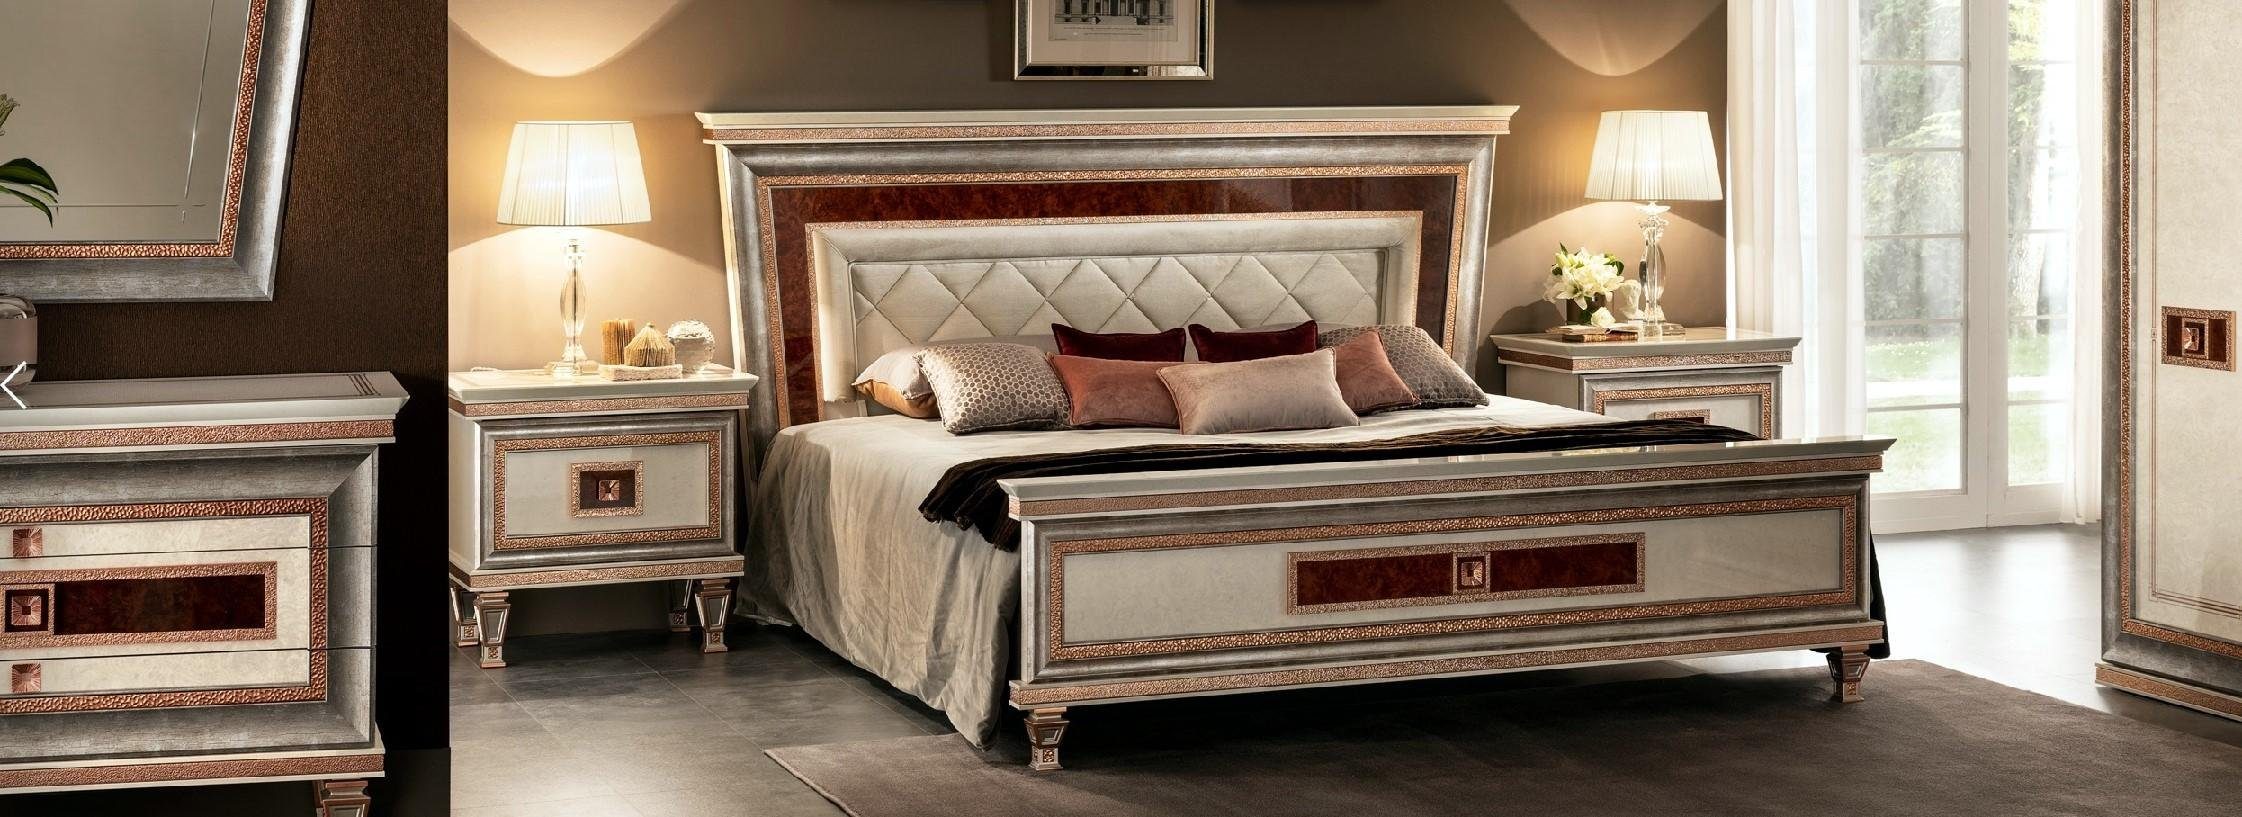 JVmoebel Schlafzimmer-Set Luxus Bett 2x 3tlg. Arredoclassic Schlafzimmer Möbel Nachttisch